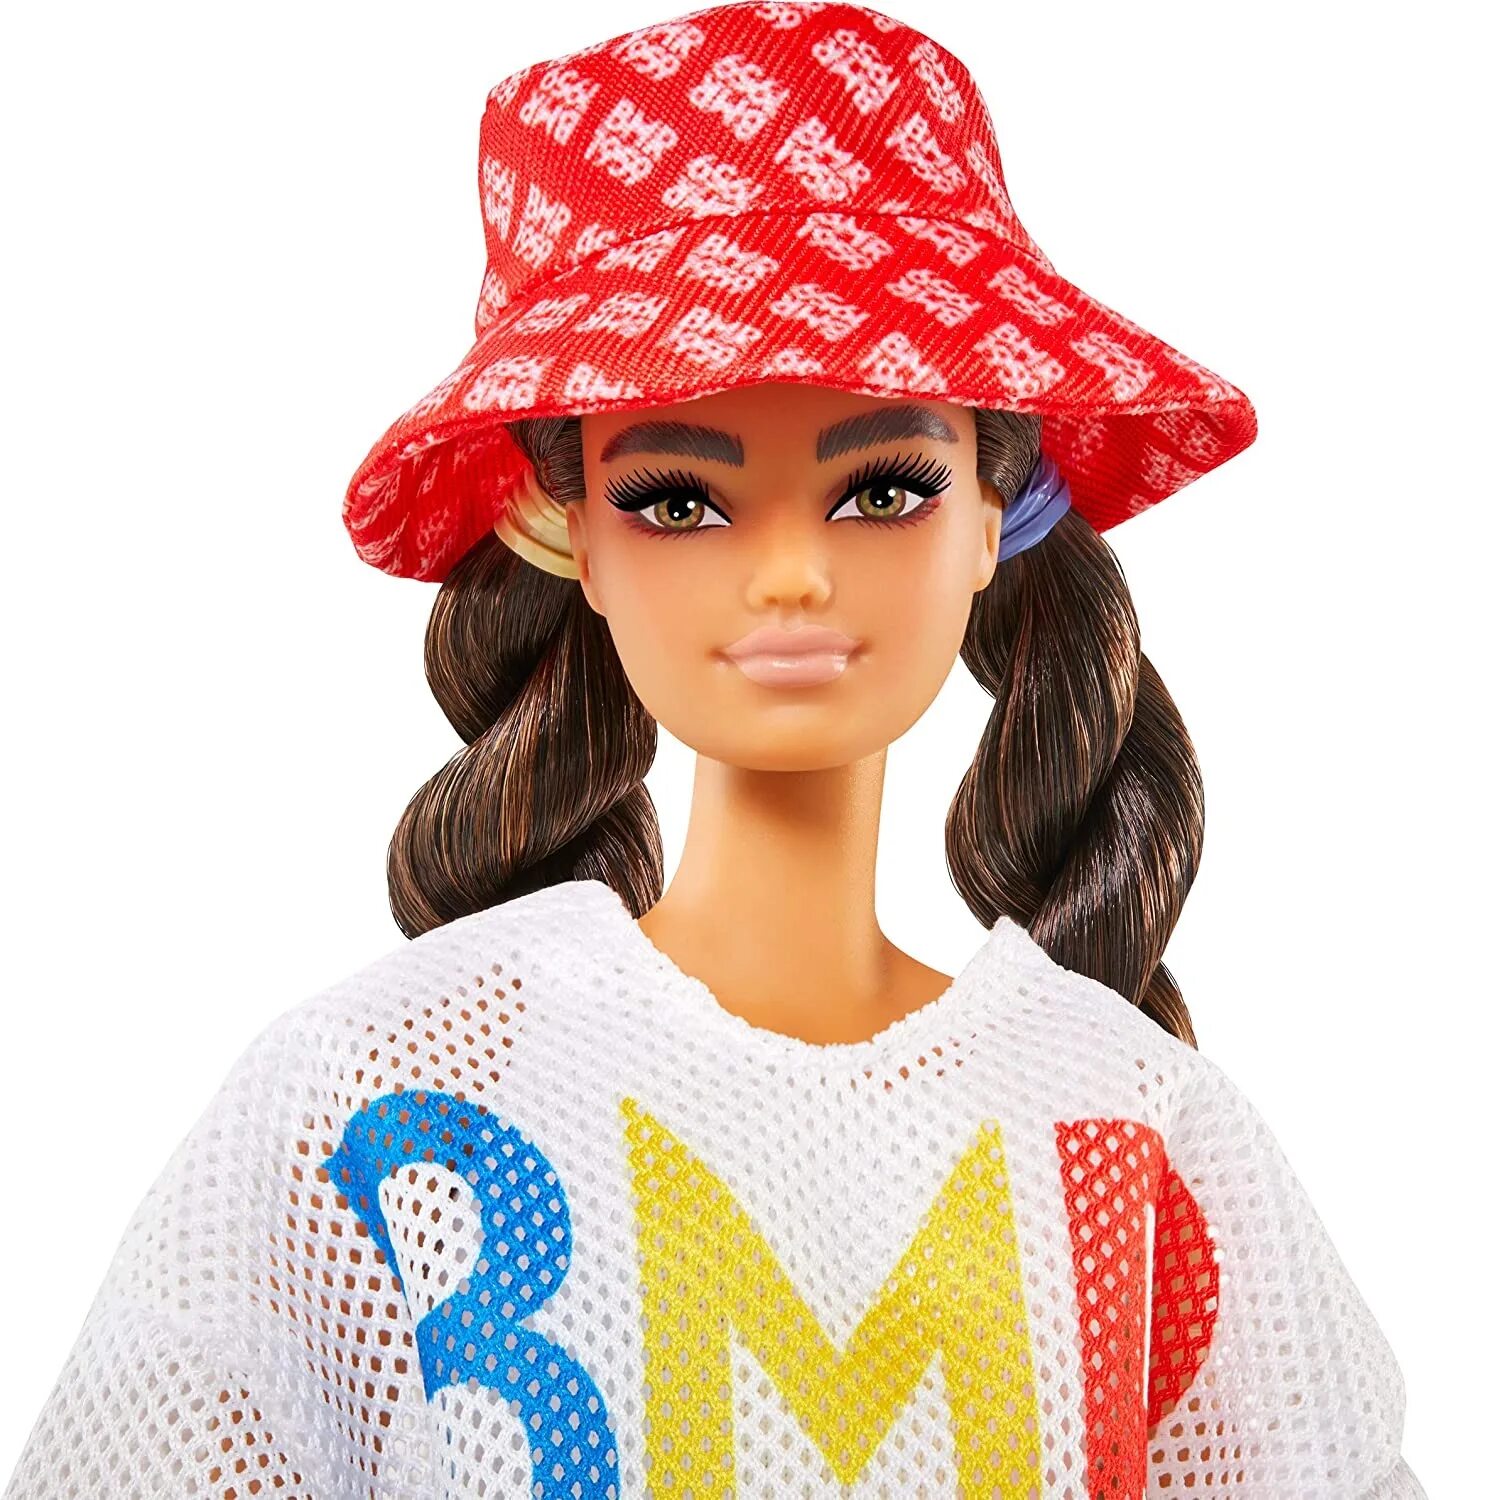 Кукла нова купить. Кукла Барби BMR 1959. Барби коллекция bmr1959. Куклы Барби БМР 1959. Кукла Barbie коллекционная bmr1959.